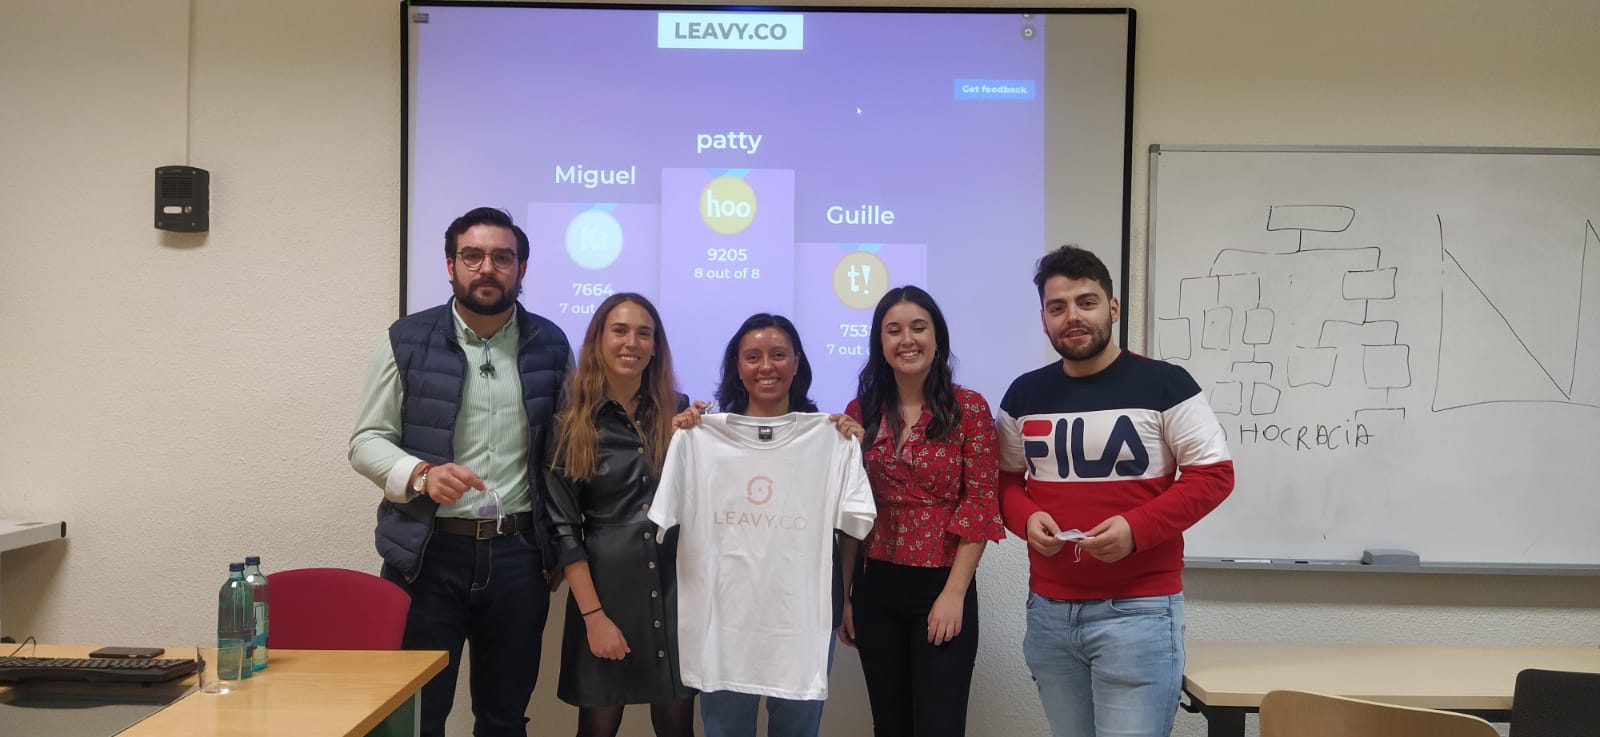 Leavy.co: una startup turística en Madrid